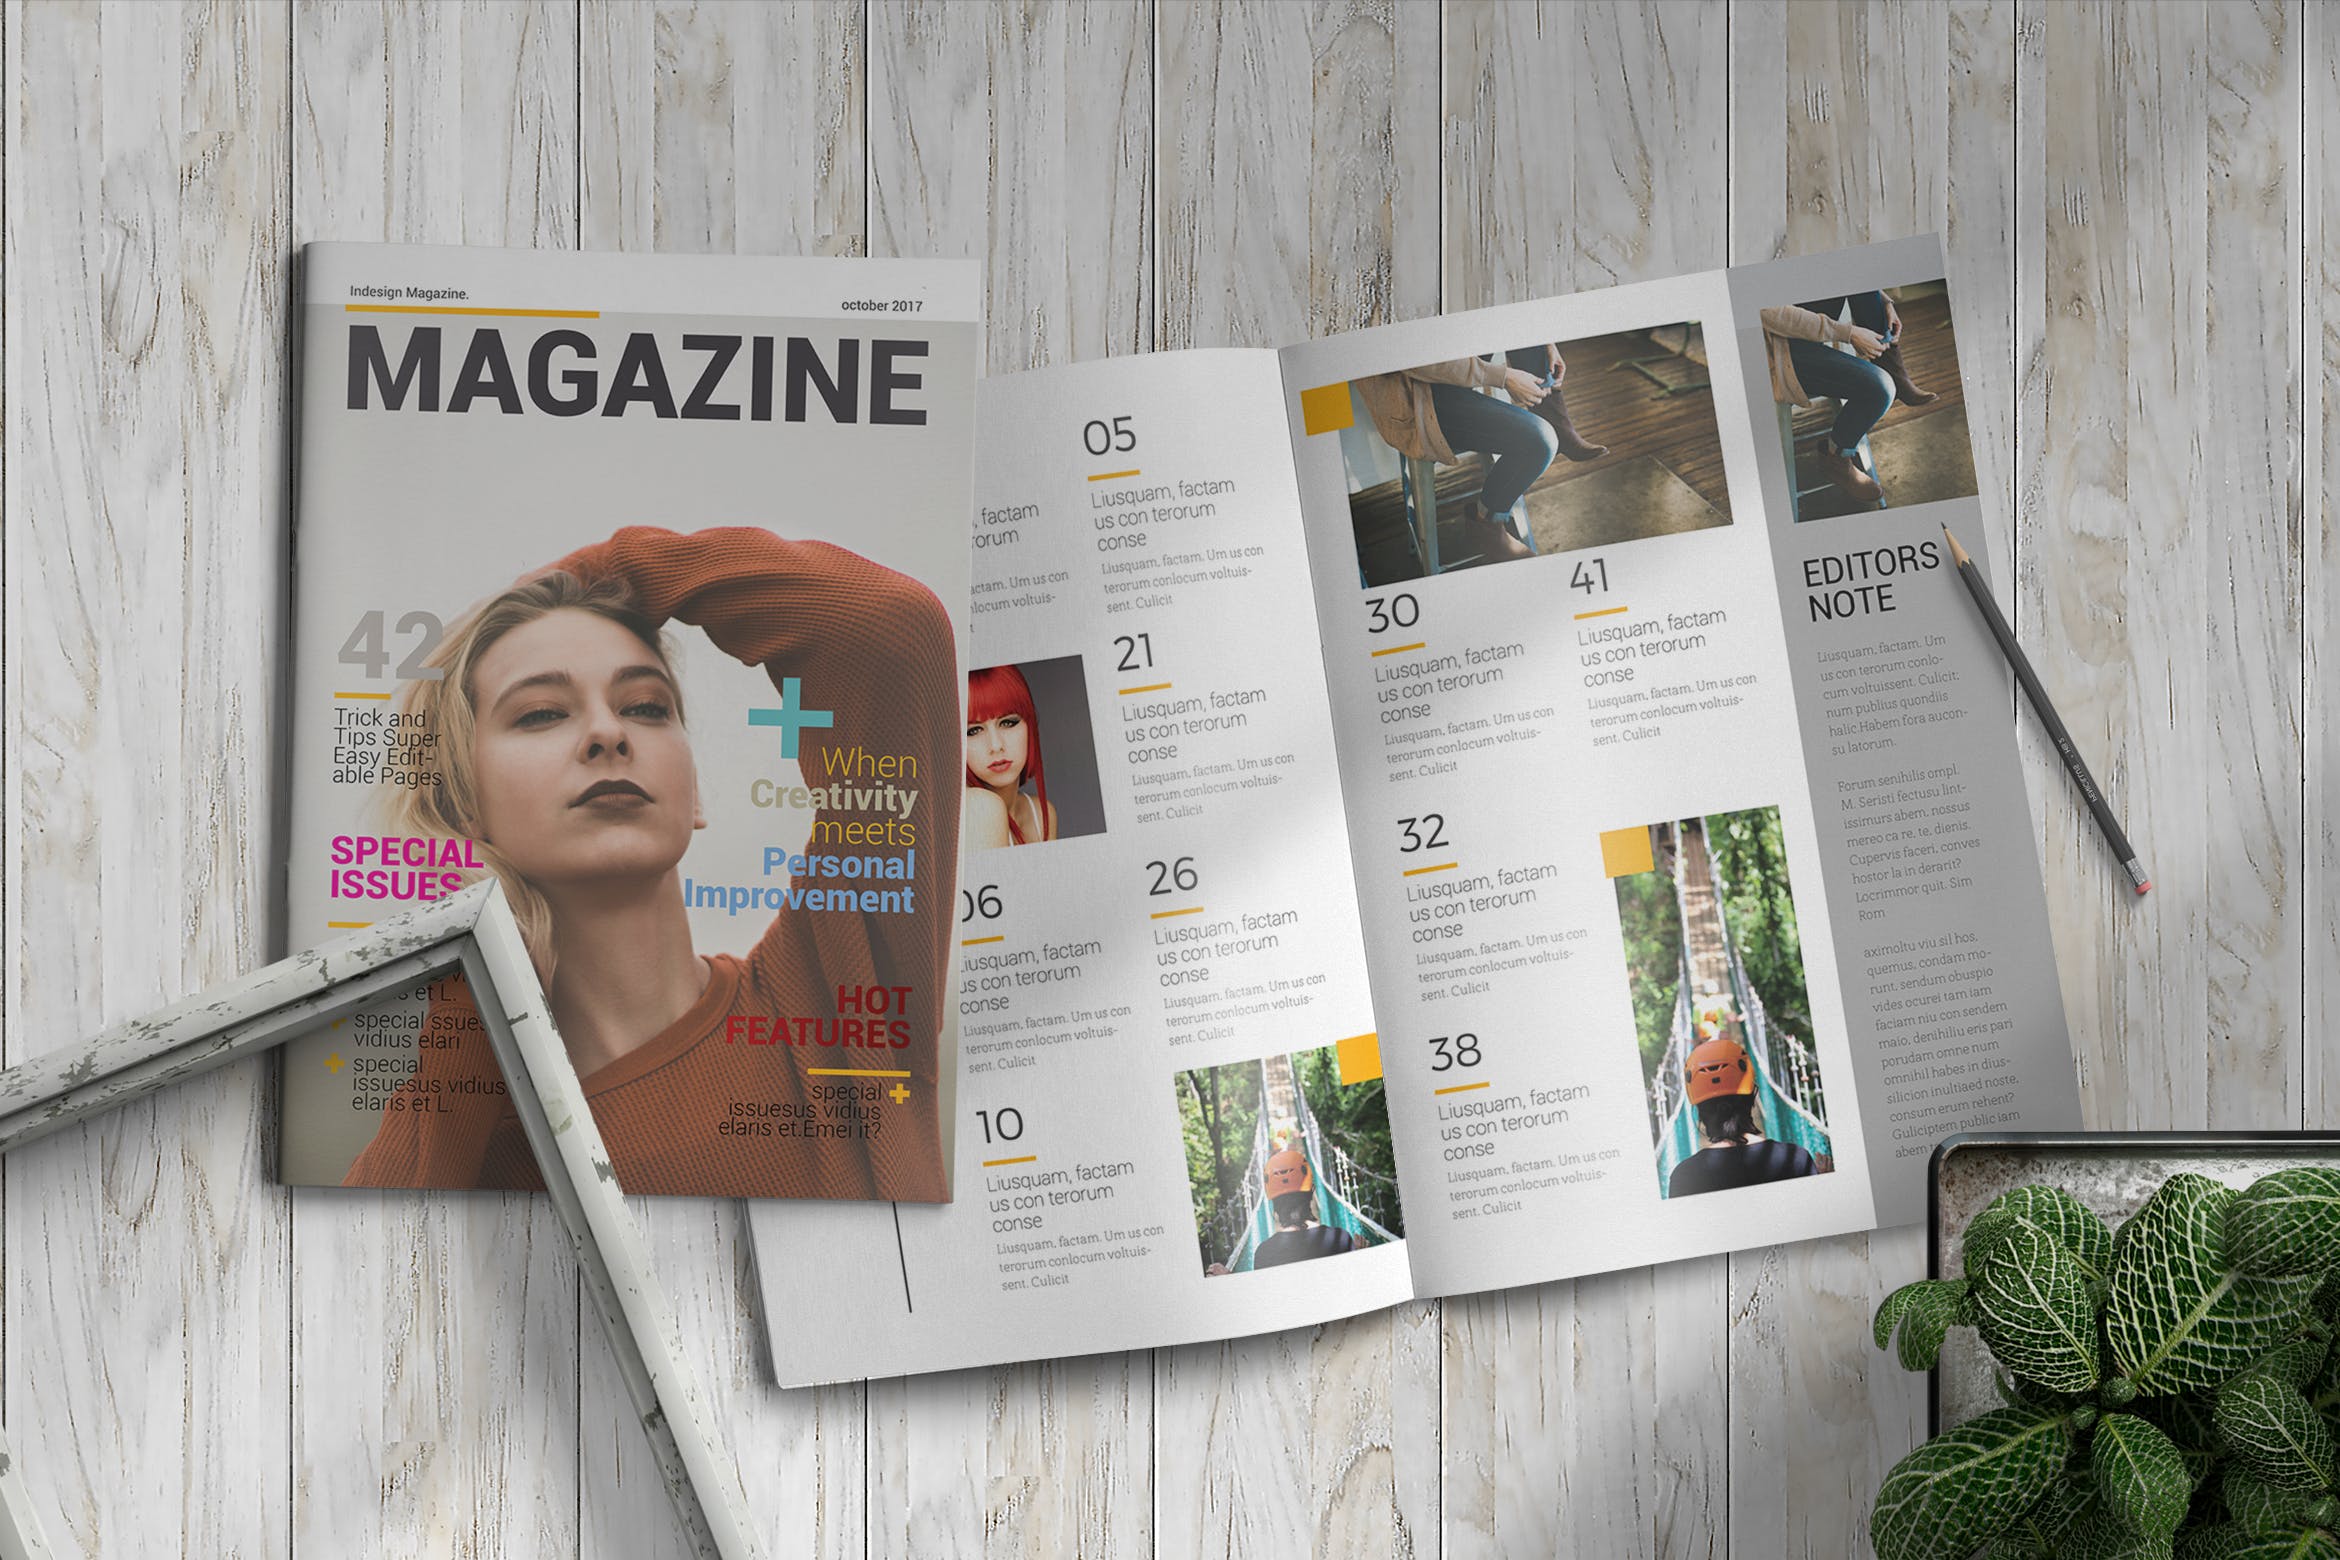 女性时尚主题素材库精选杂志版式设计InDesign模板 InDesign Magazine Template插图